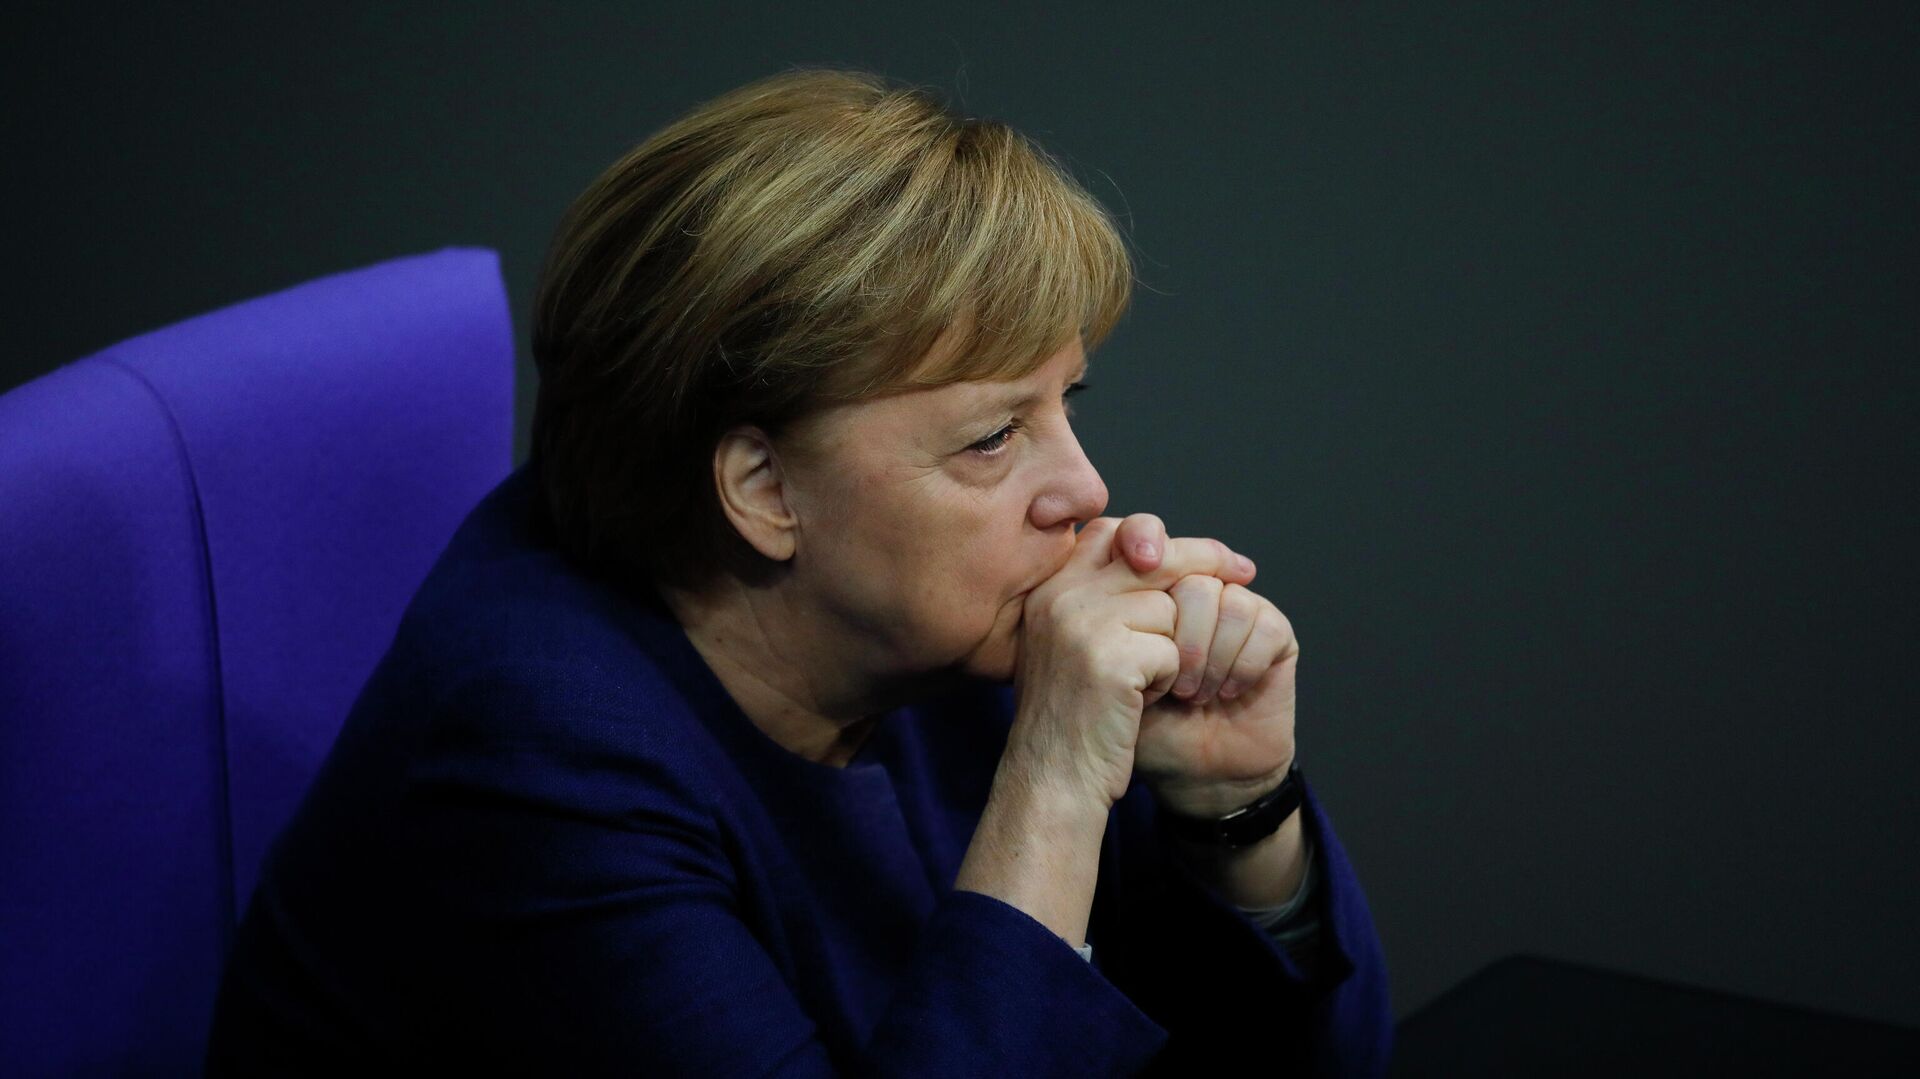 Канцлер Германи Ангела Меркель в Бундестаге, Берлин  - РИА Новости, 1920, 31.05.2021